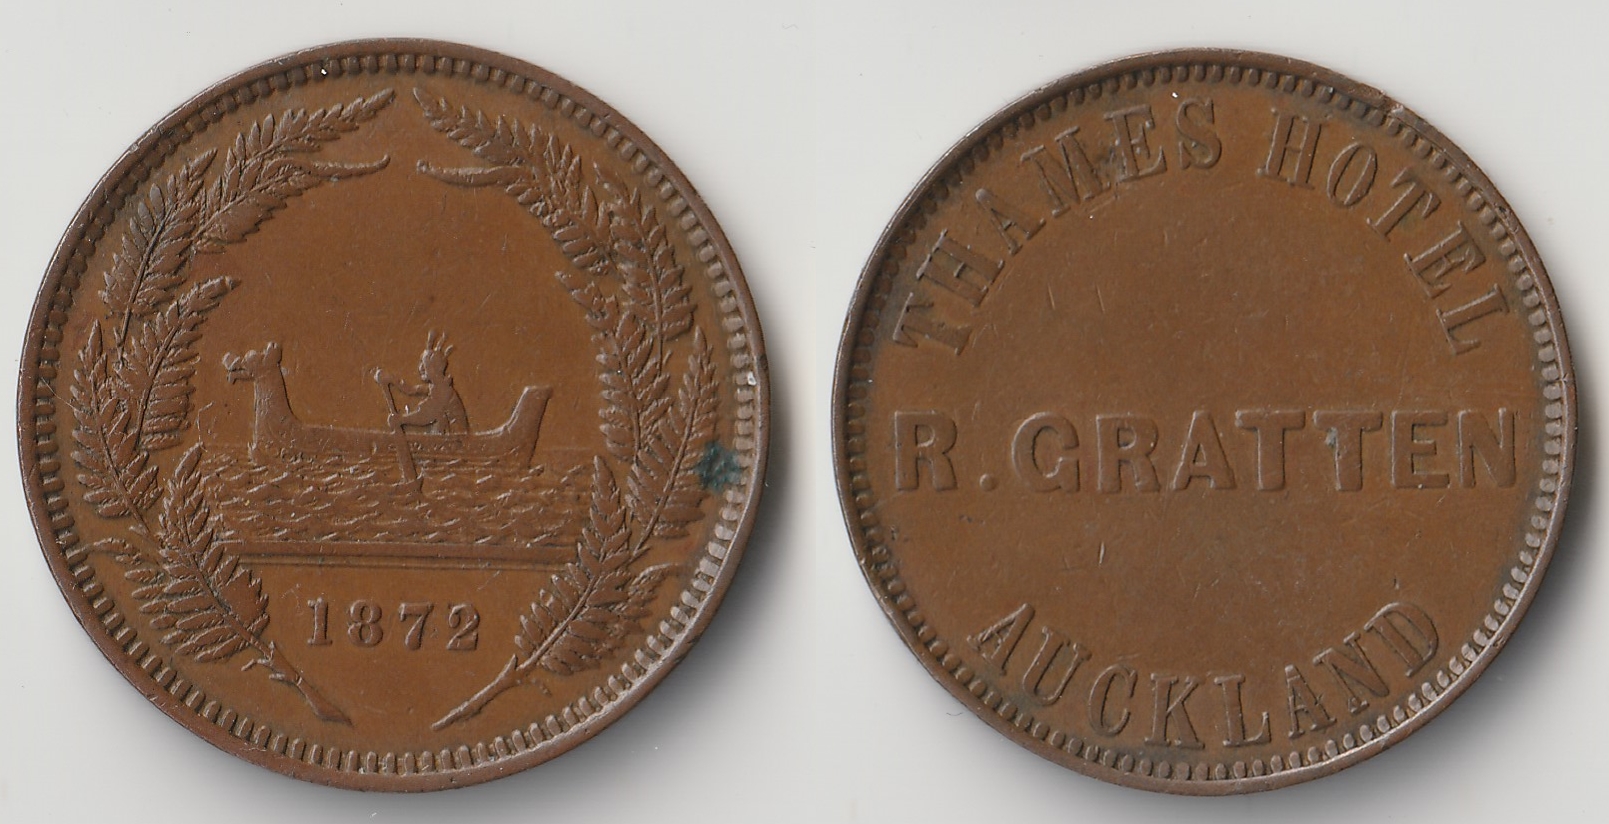 1872 new zealand penny token gratten.jpg